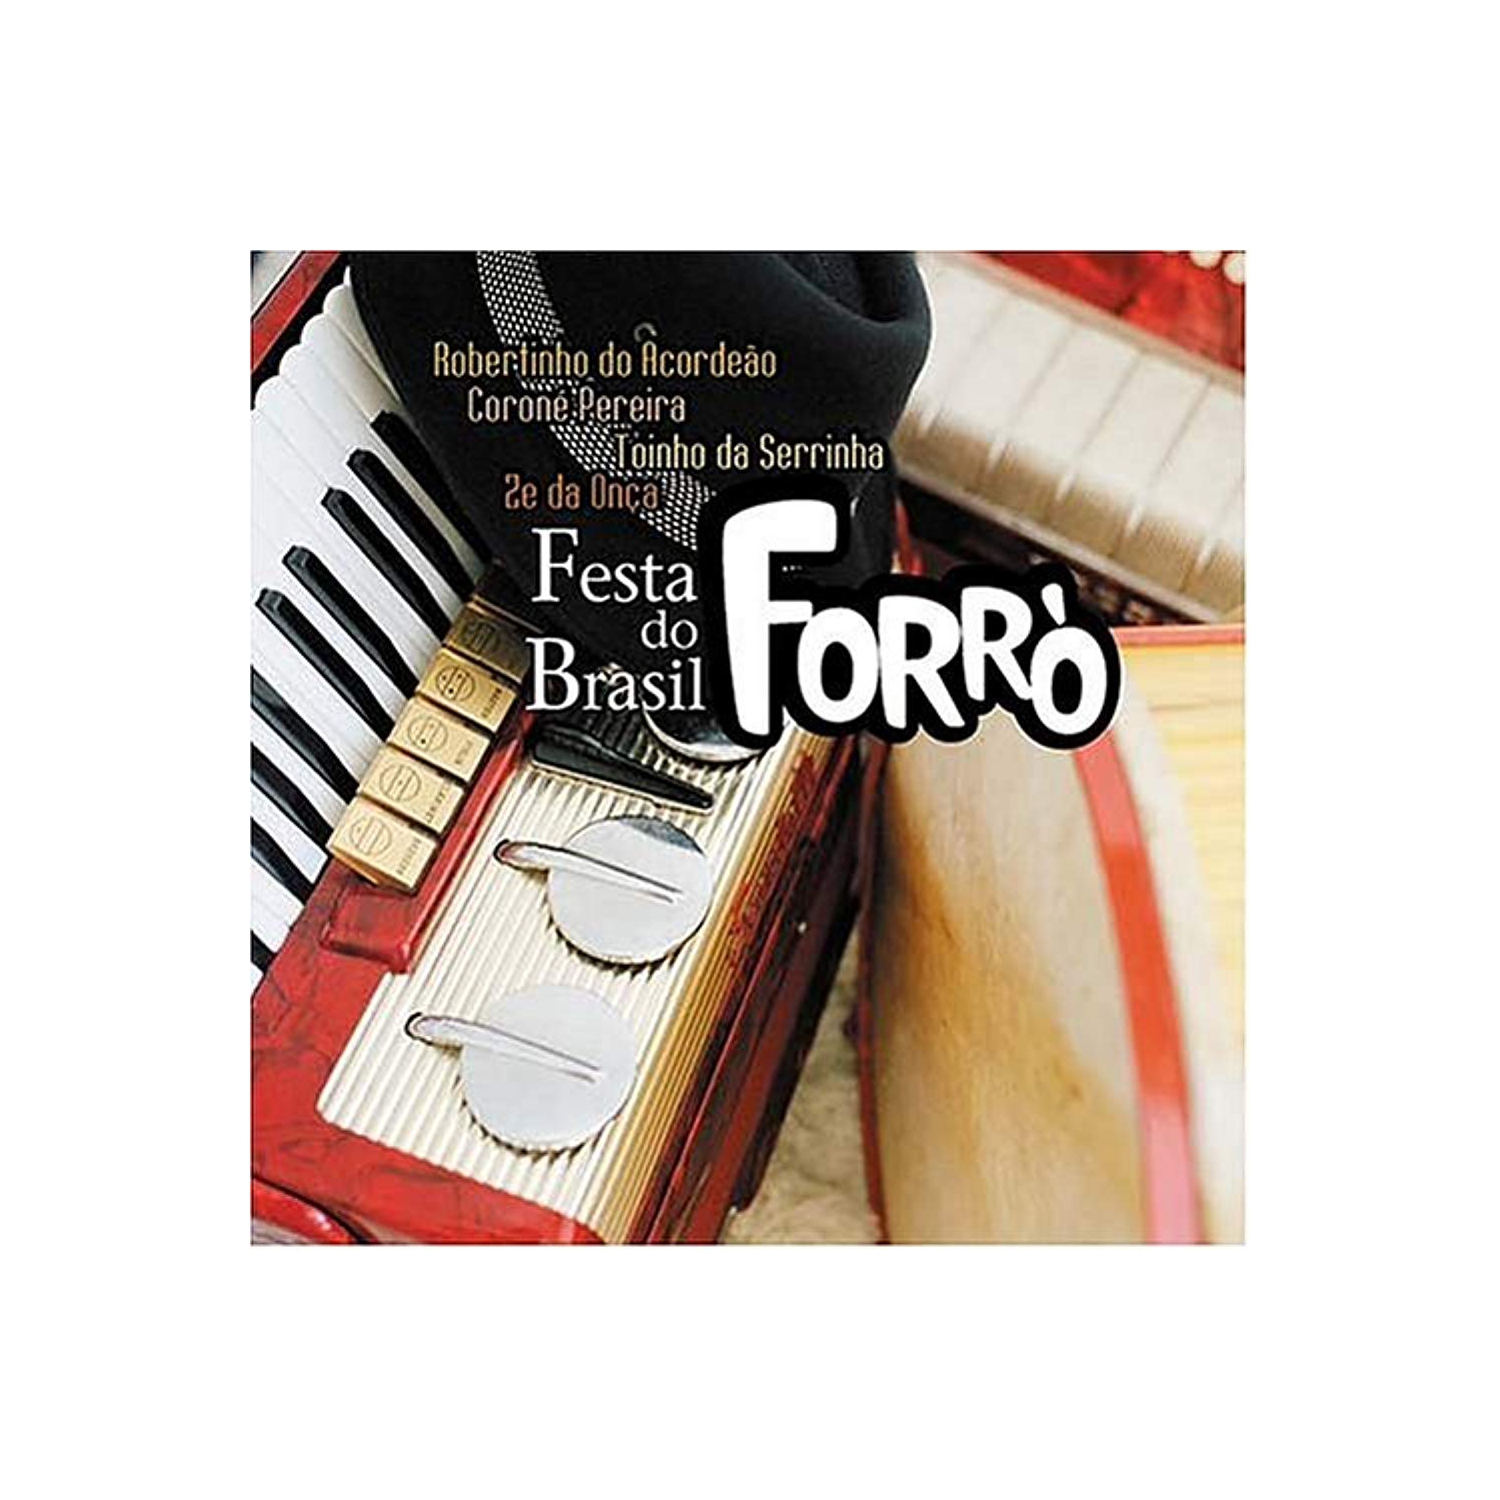 Forro: Festa Do Brasil [Audio CD] Do Acordeao, Robertinho